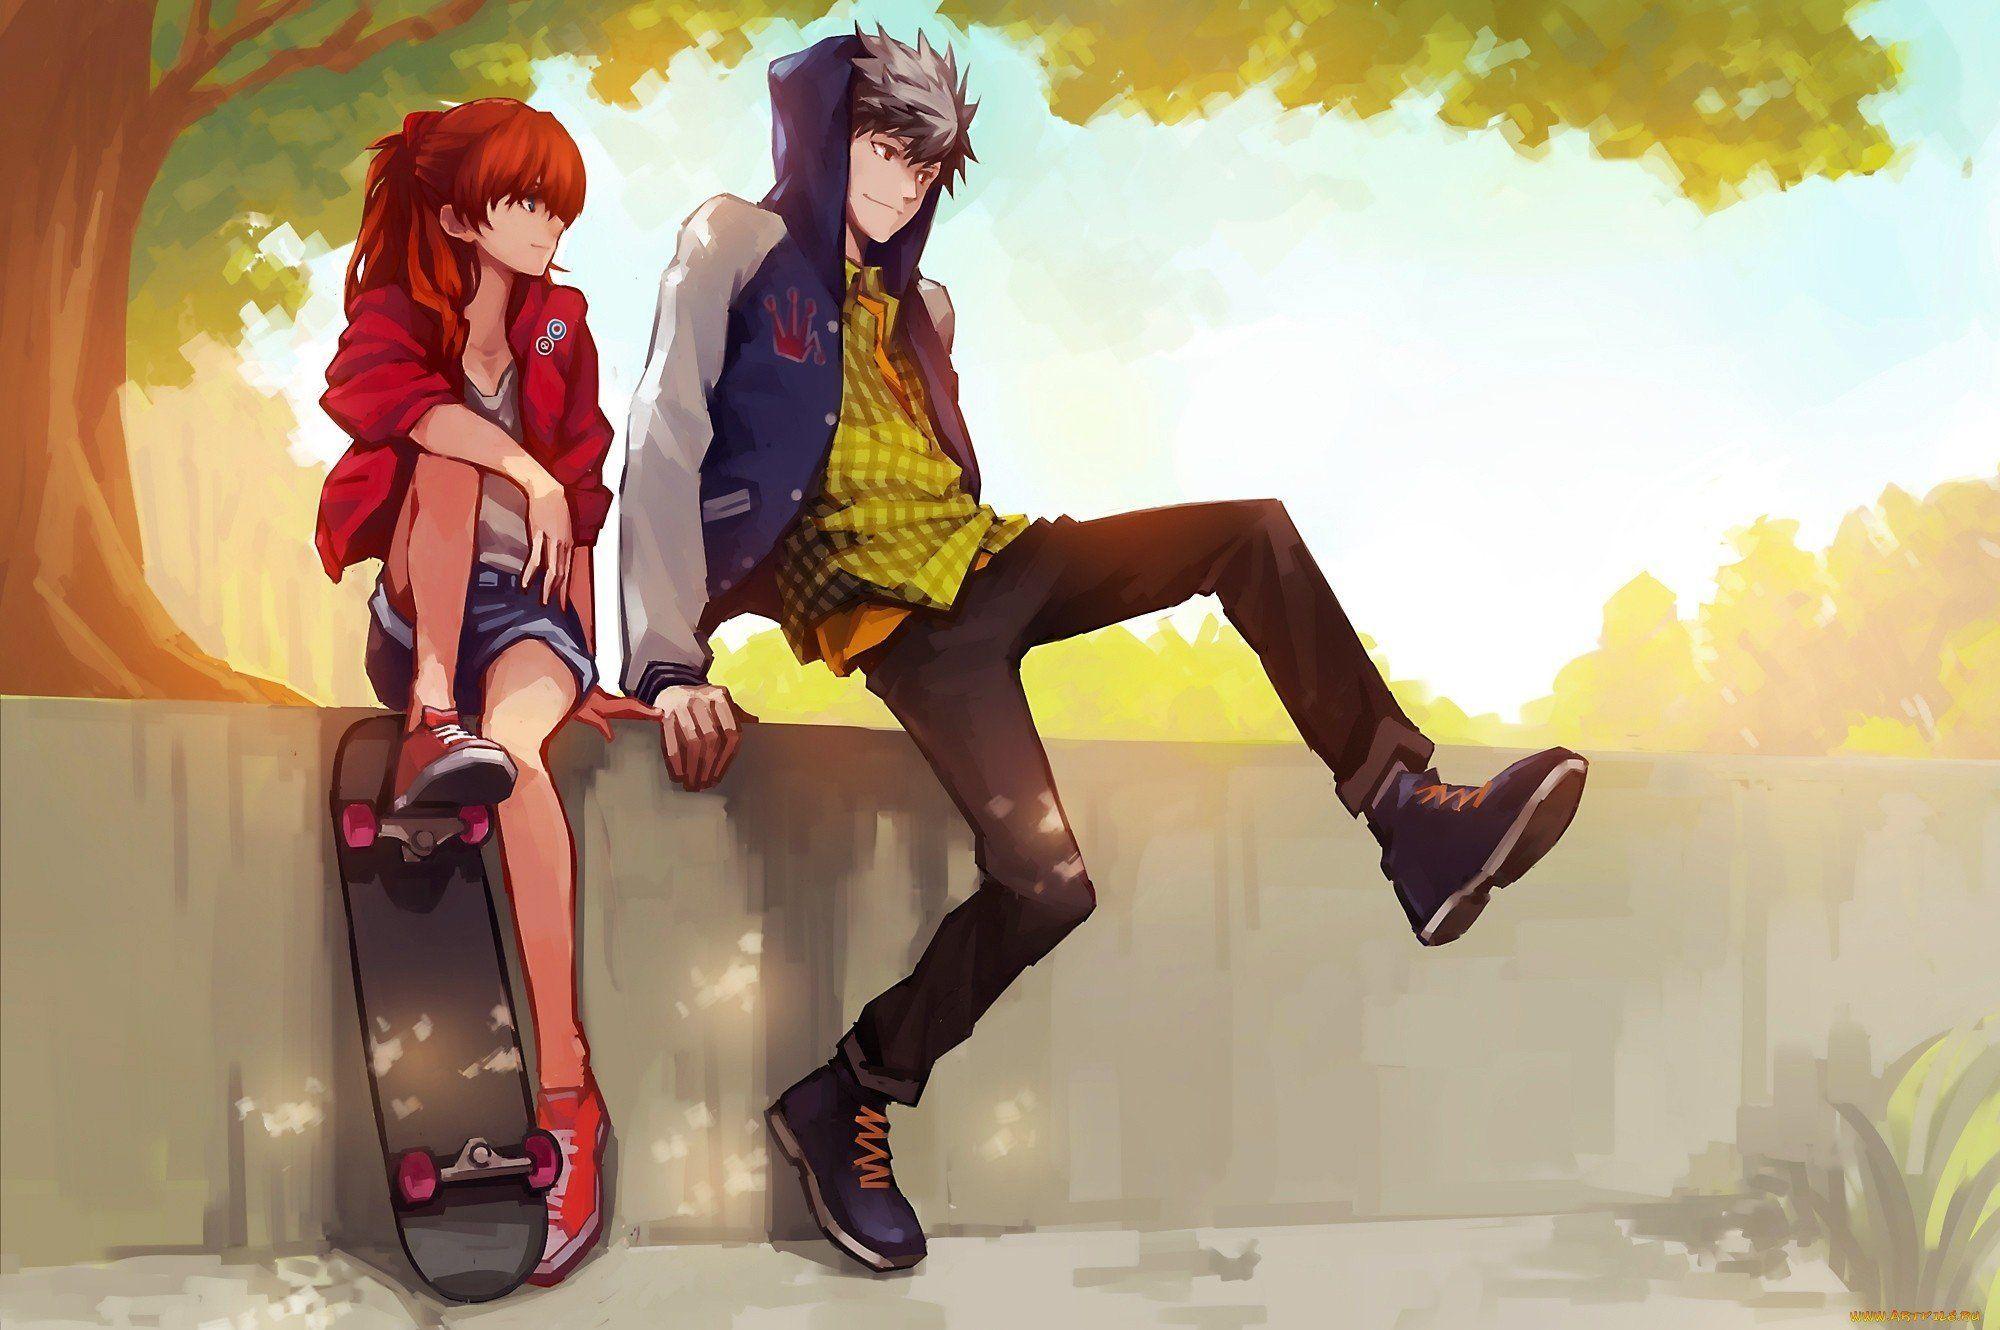 Wallpaper Skateboard Anime Girl Skateboards Anime Art Skateboarding  Background  Download Free Image